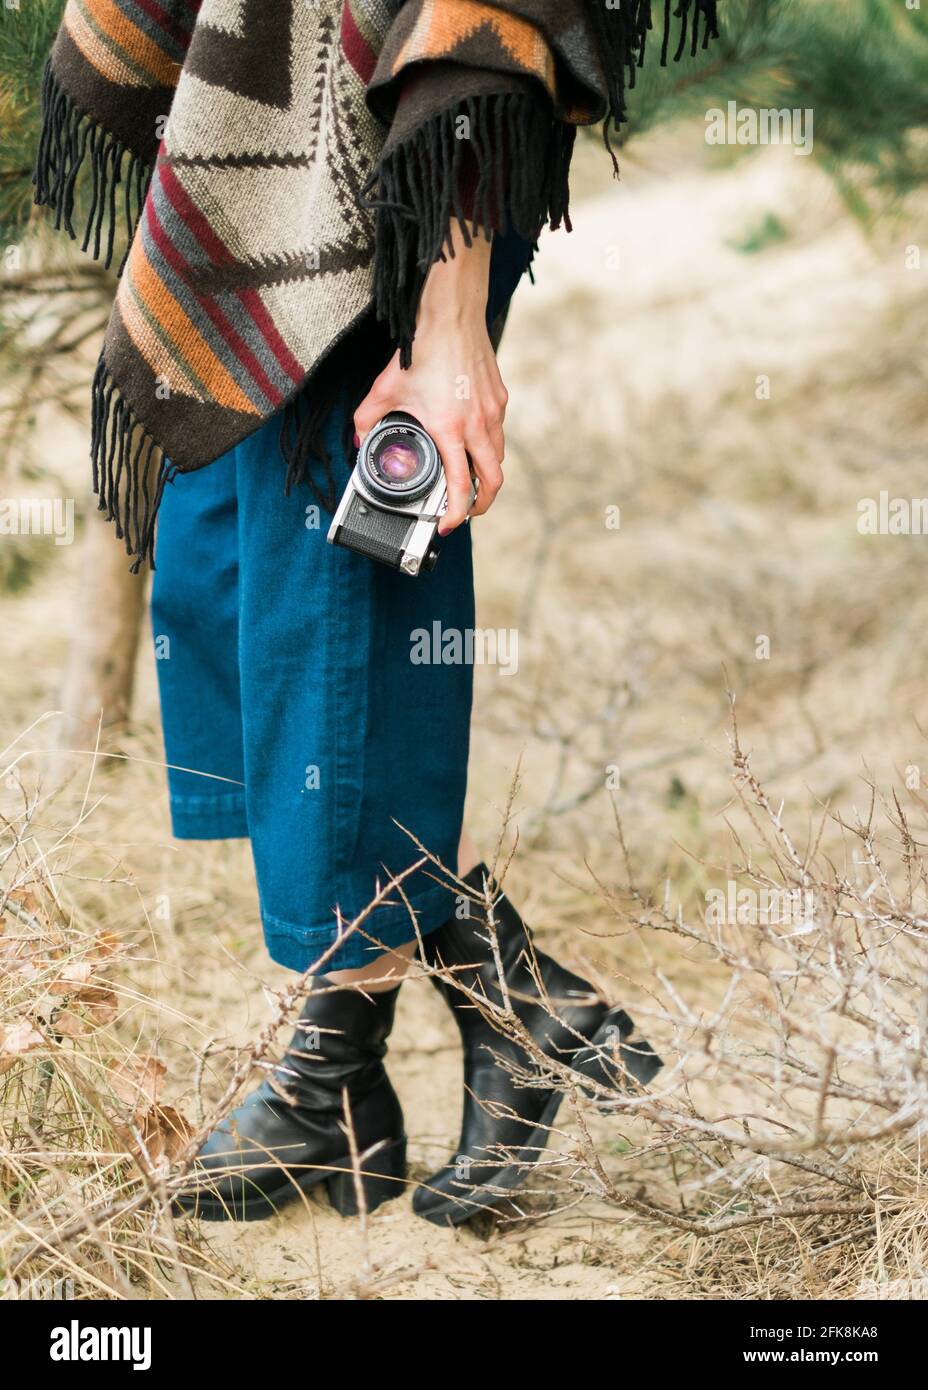 Giovane donna che fotografa in una foresta con una macchina fotografica d'epoca. Stile kinfolk/outdoor. Foto Stock